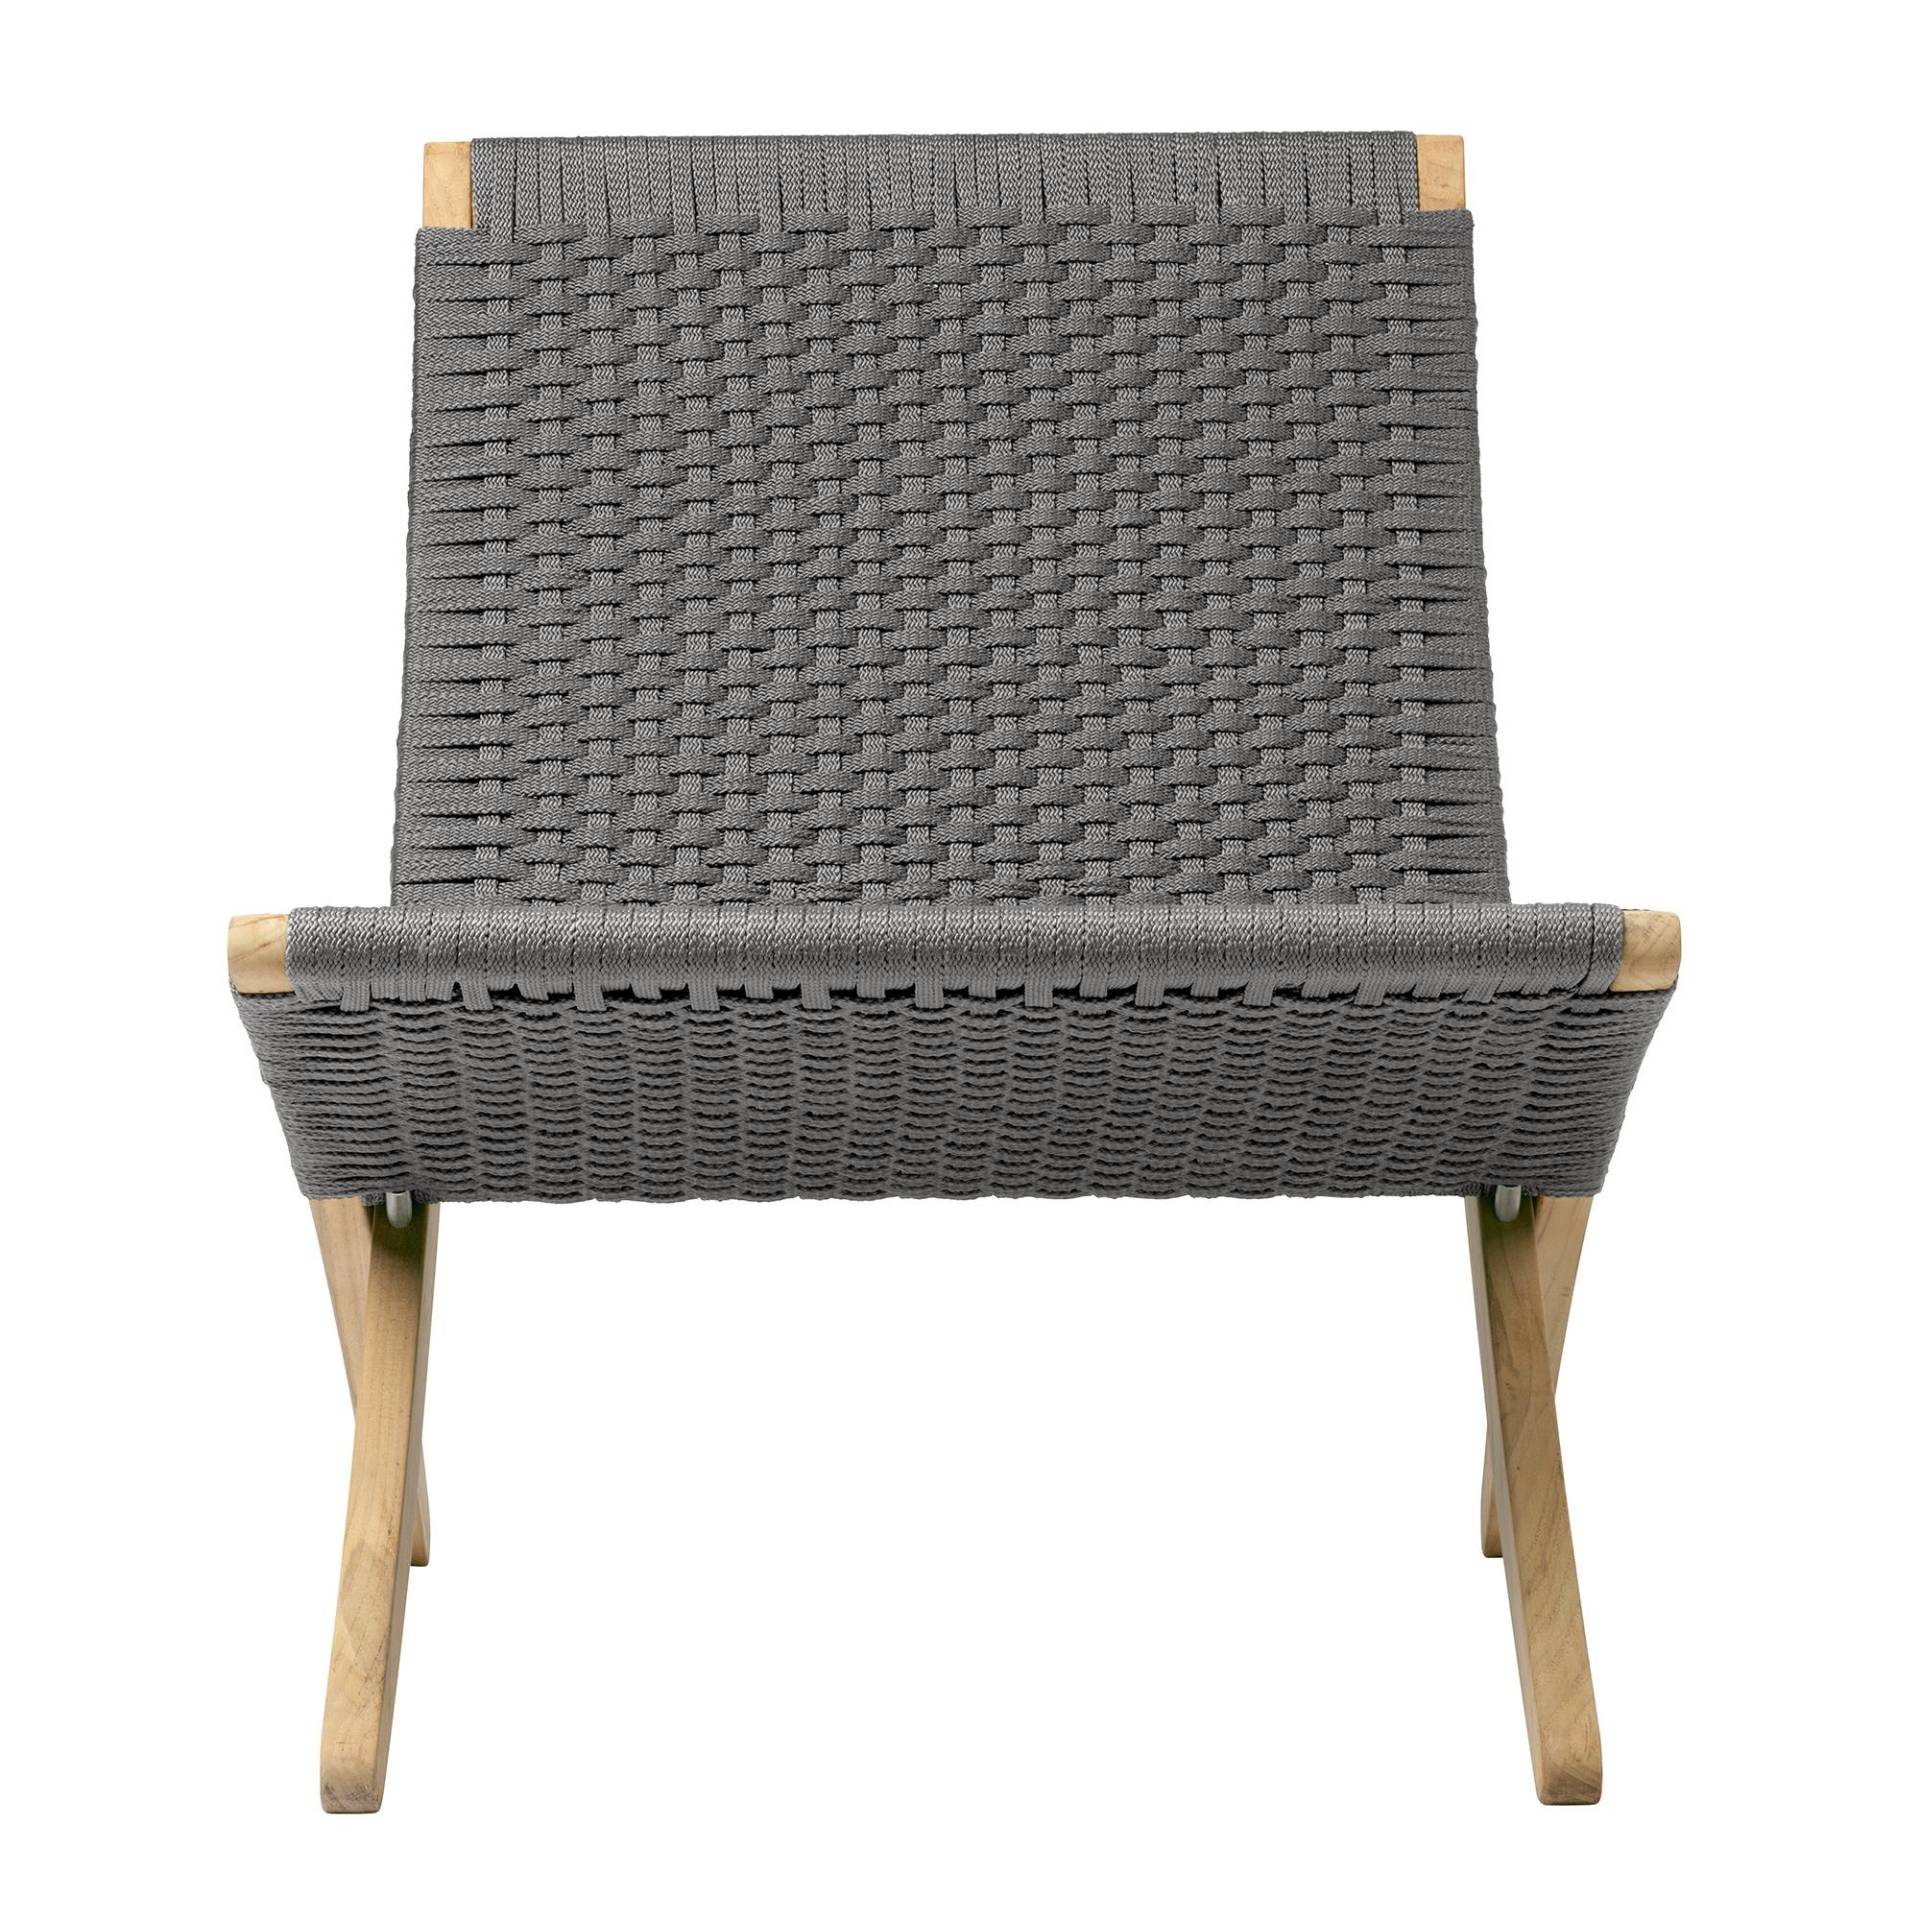 Carl Hansen - MG501 Outdoor Cuba Chair klappbar - kohle/Outdoor-Bandgeflecht/BxHxT 61x76x79cm/Gestell Teak unbehandelt von Carl Hansen